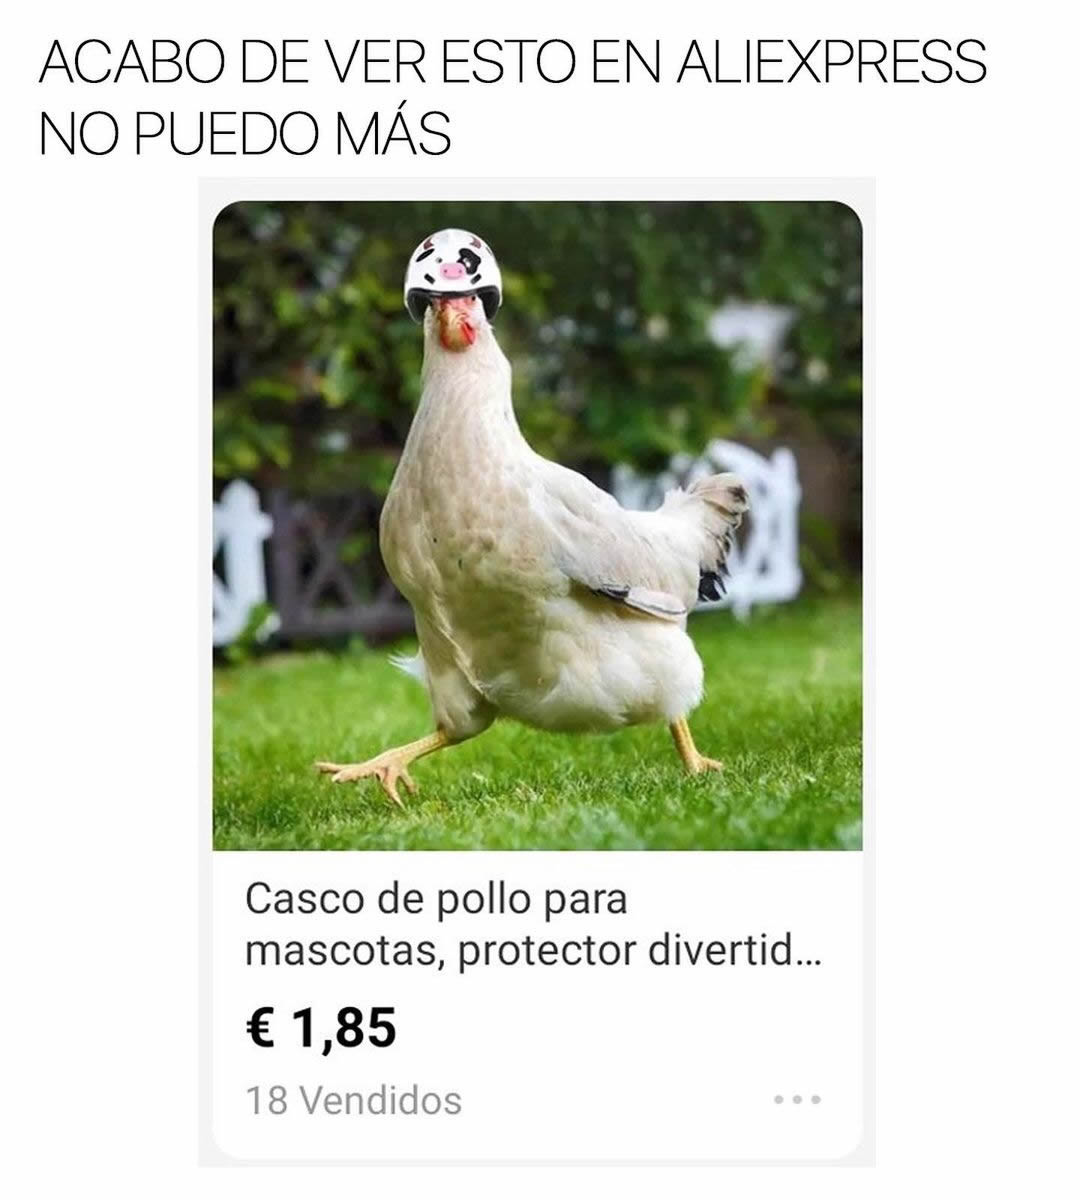 Acabo de ver esto en Aliexpress, no puedo más.  Casco de pollo para mascotas, protector divertid... €1,85. 18 Vendidos.